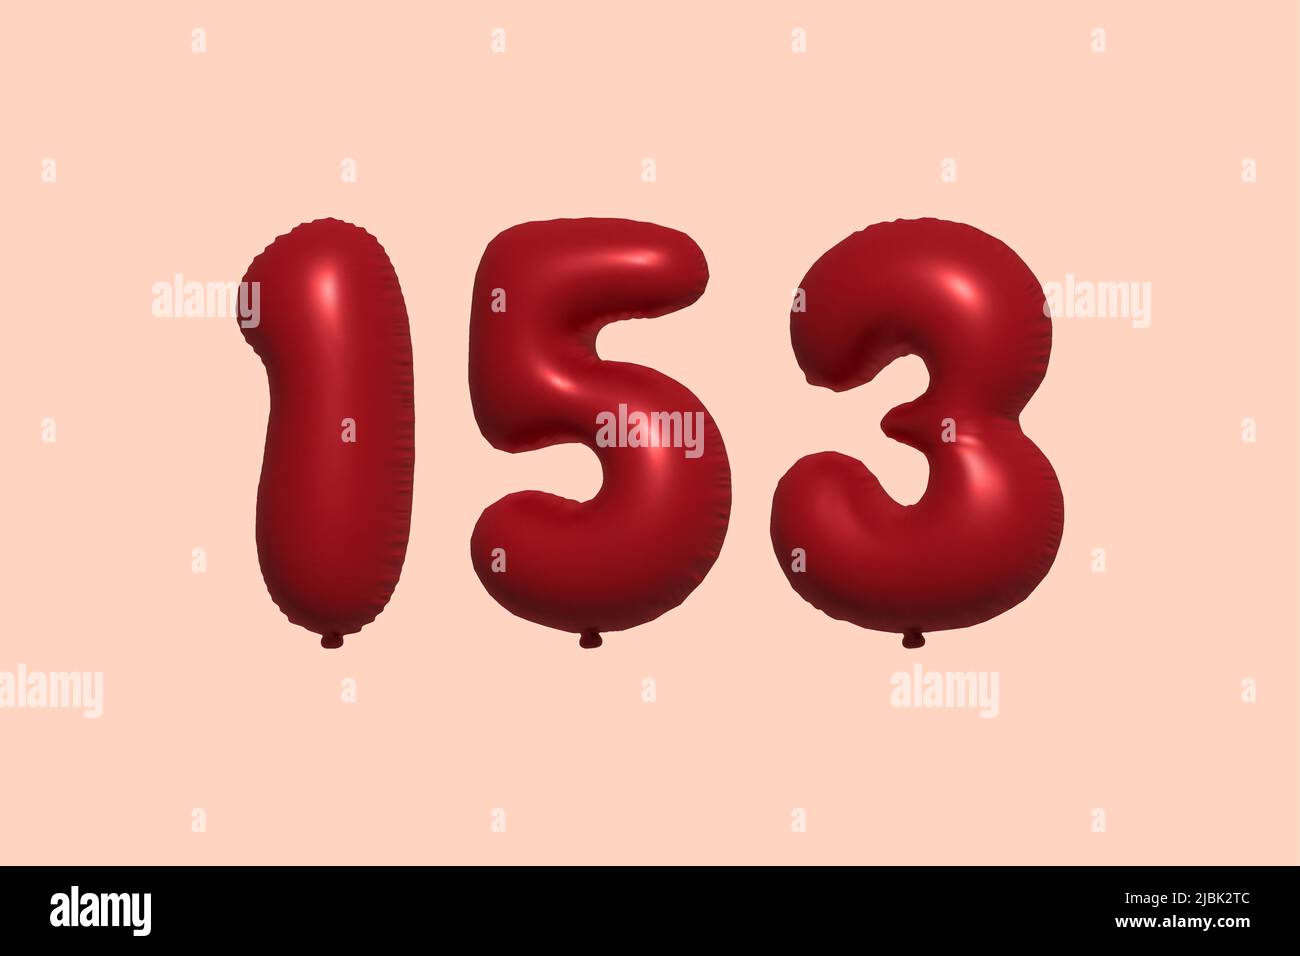 palloncino in numero 153 3d realizzato con rendering realistico di palloncino in aria metallica 3d. 3D palloncini di elio rosso per la vendita decorazione Party compleanno, celebrare anniversario, Vacanza nuziale. Illustrazione vettoriale Illustrazione Vettoriale